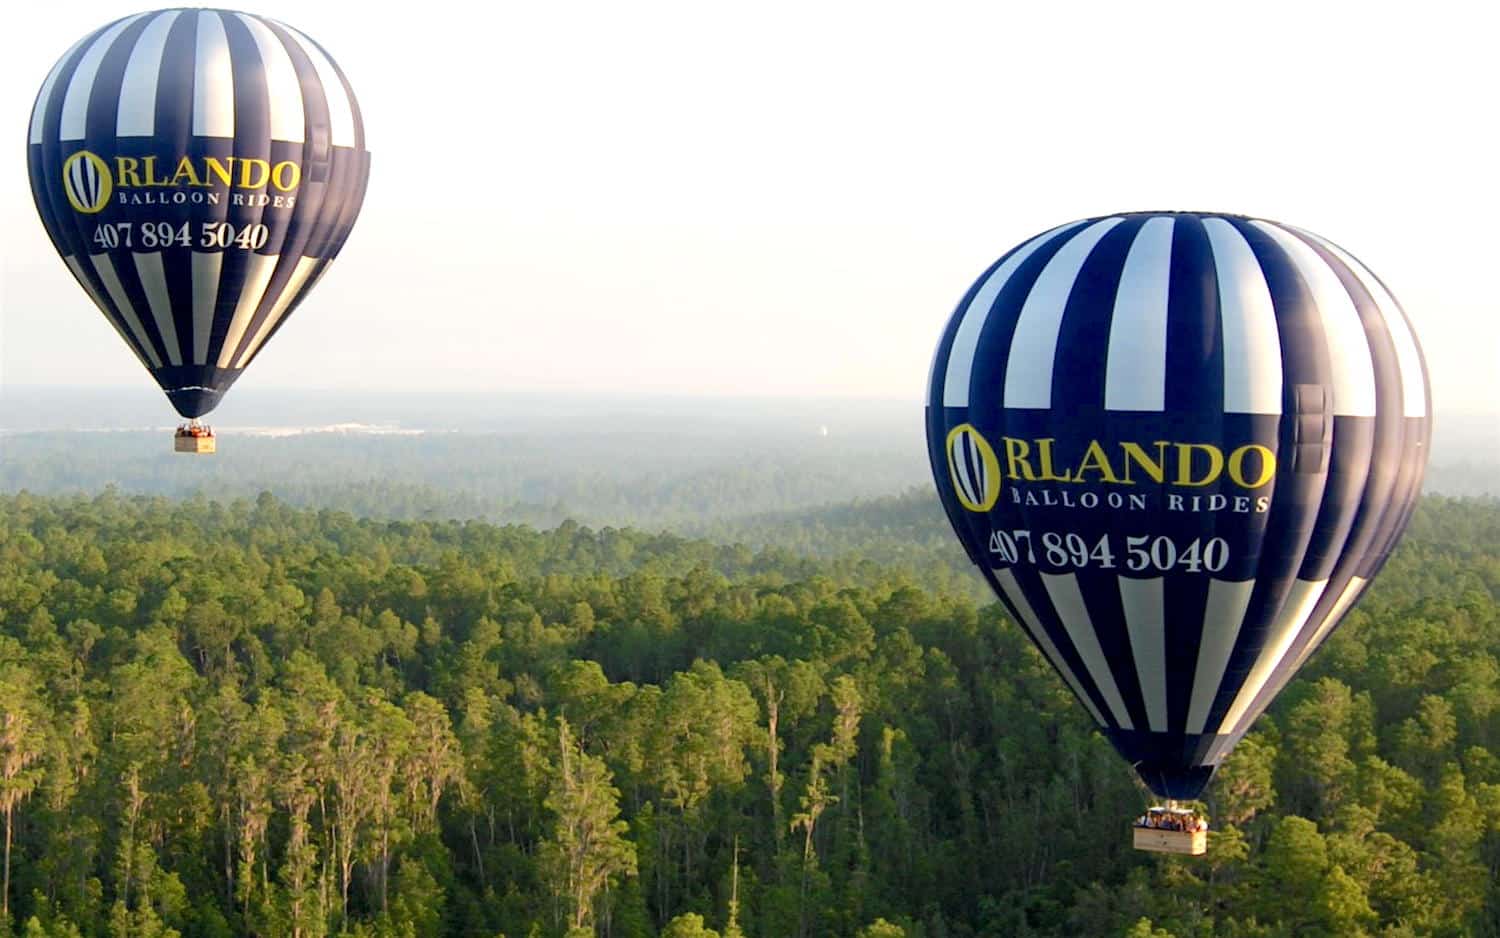 Orlando Balloon Rides - Hot Air Ballooning at its Best!